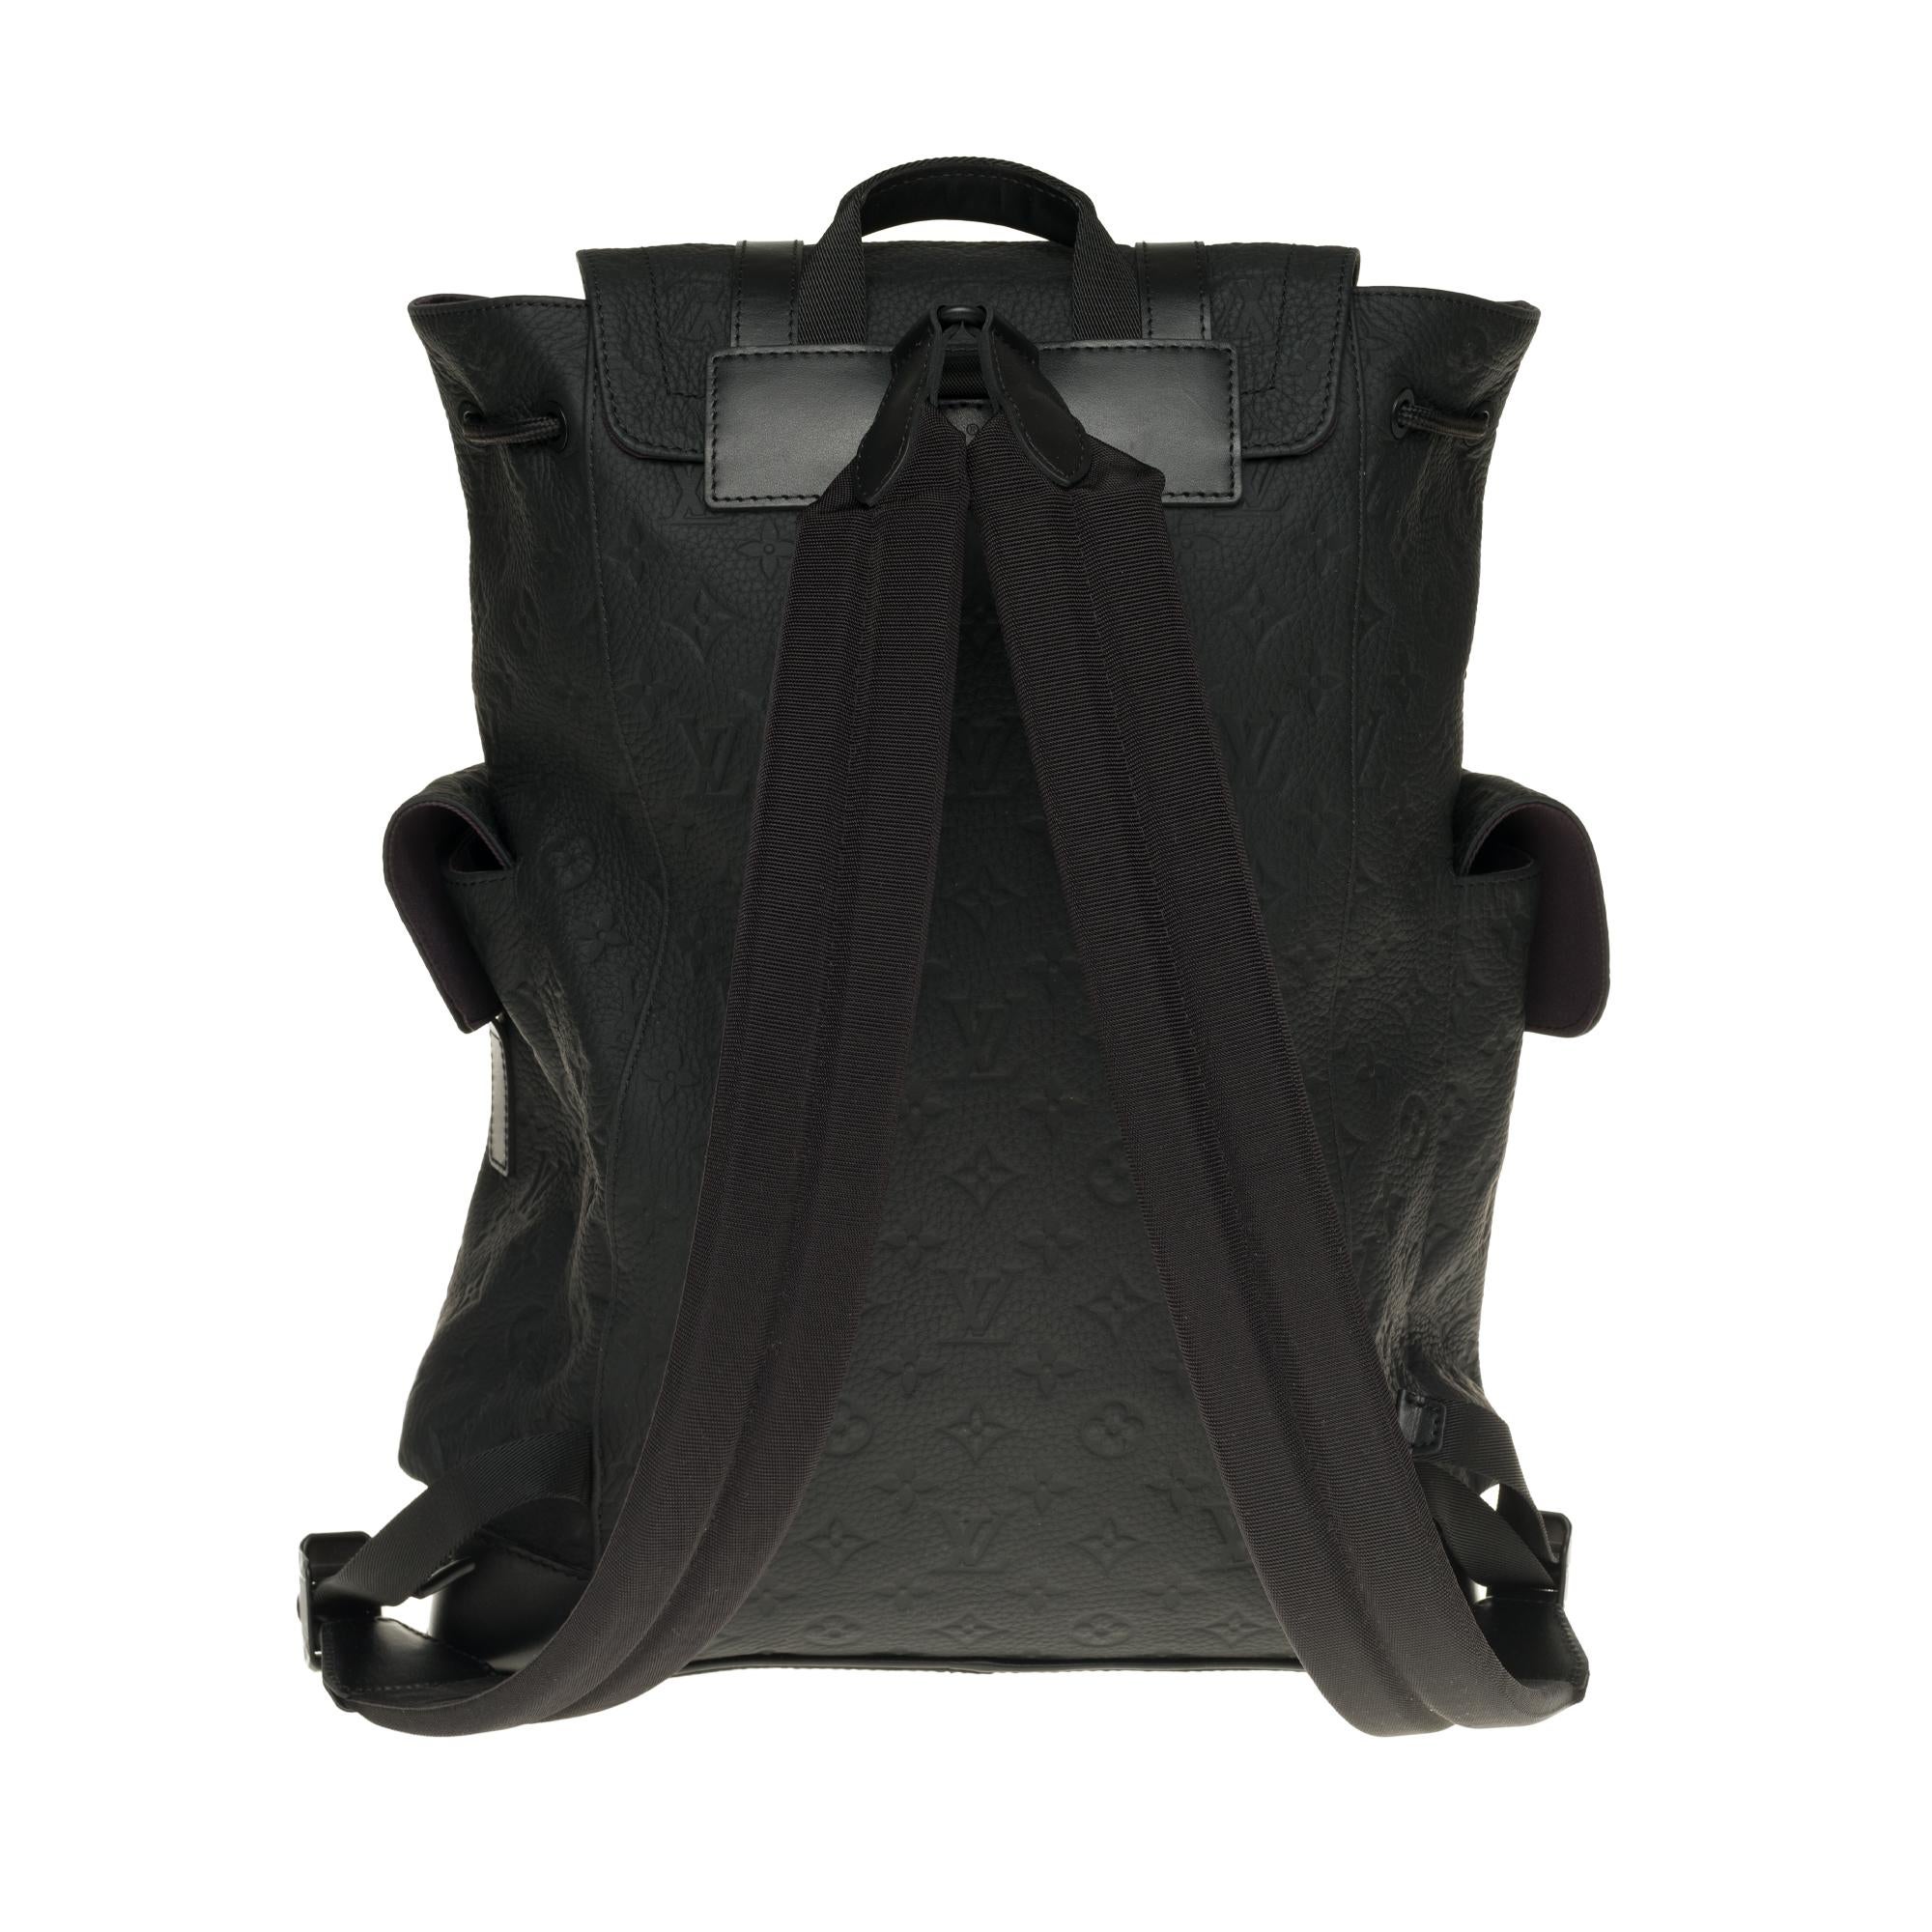 Dieser mittelgroße Christopher PM Rucksack bietet zwei seitliche Außentaschen und viele funktionelle Innentaschen. Sie ist aus Taurillon-Leder mit Monogrammprägung gefertigt und verfügt über schwarze Lederriemen und mattschwarze Metalloberflächen.